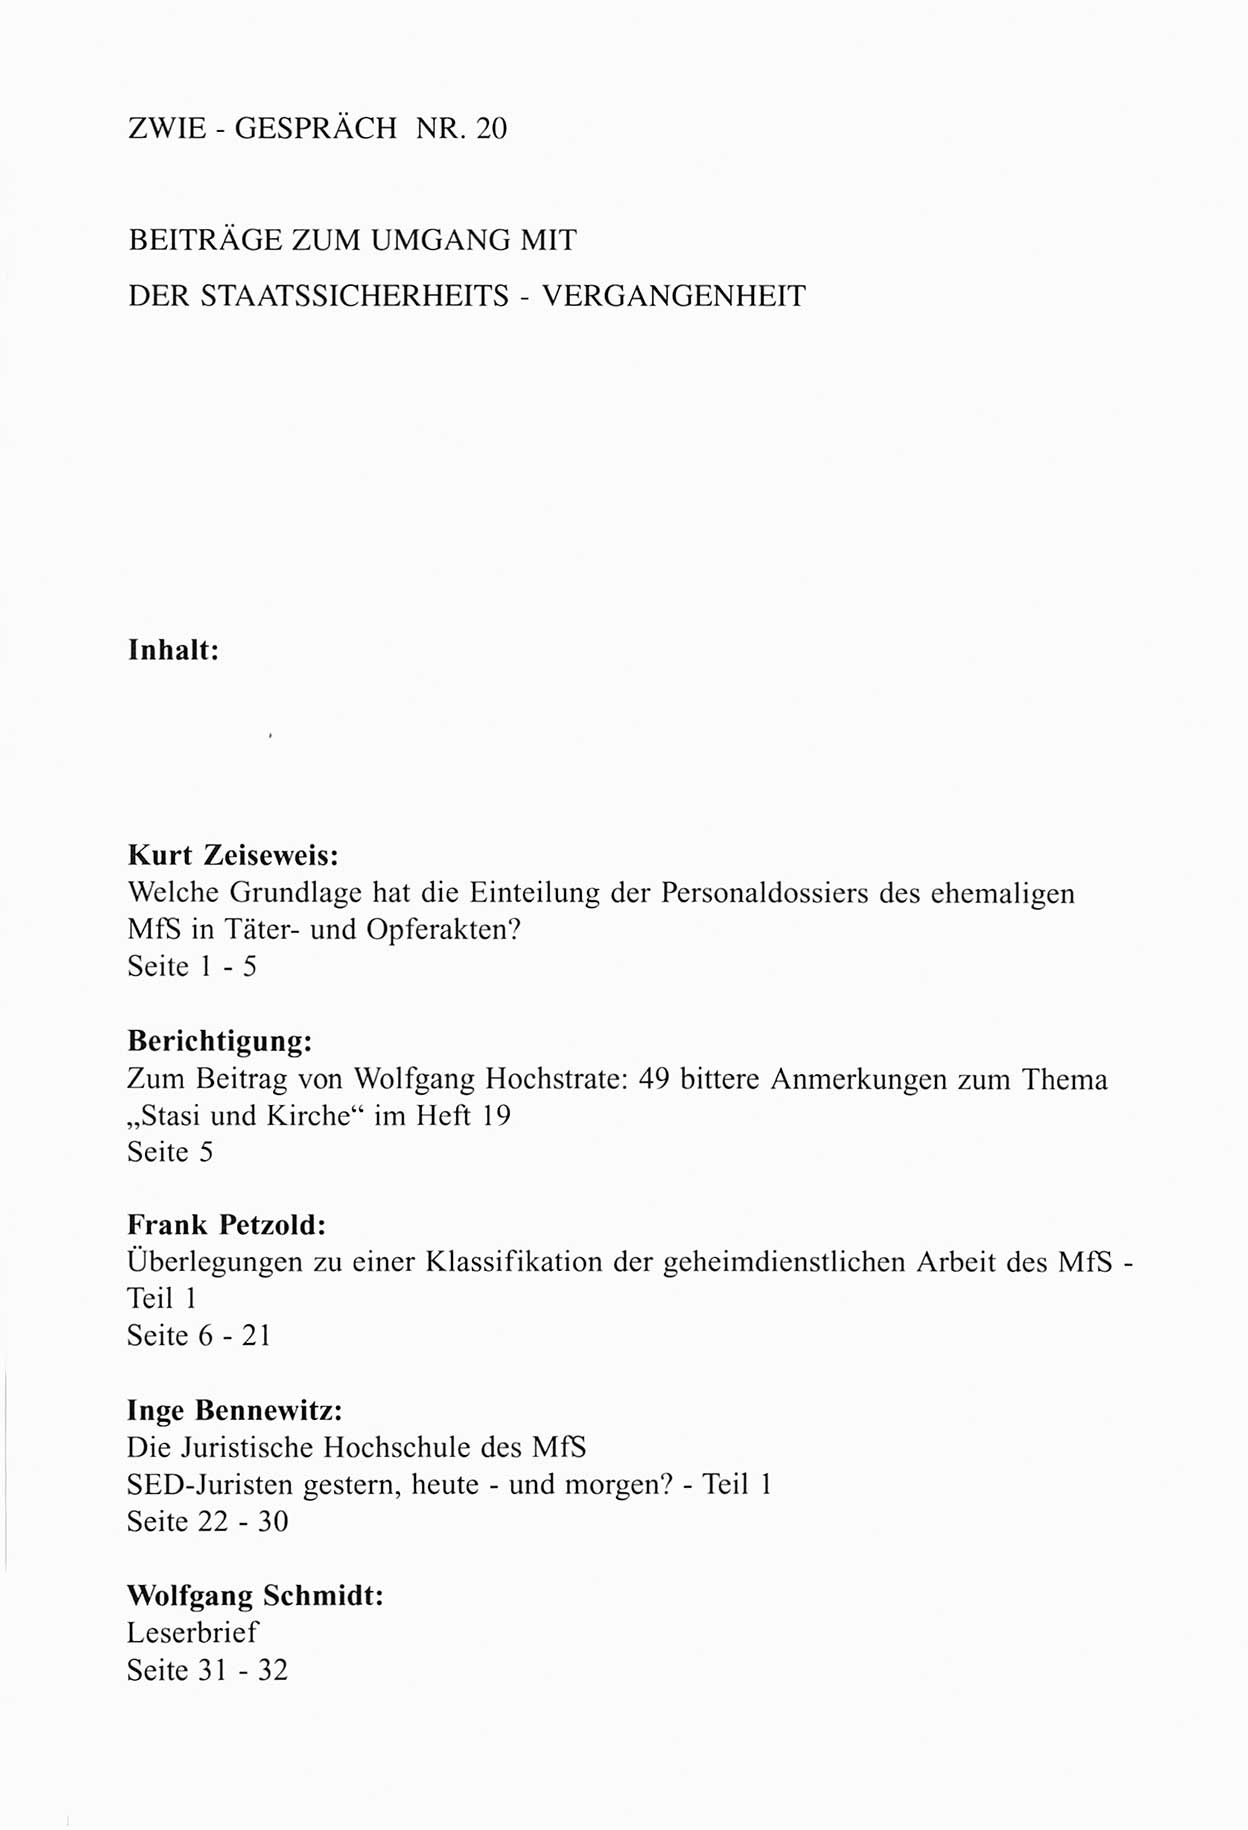 Zwie-Gespräch, Beiträge zum Umgang mit der Staatssicherheits-Vergangenheit [Deutsche Demokratische Republik (DDR)], Ausgabe Nr. 20, Berlin 1994, Seite 33 (Zwie-Gespr. Ausg. 20 1994, S. 33)